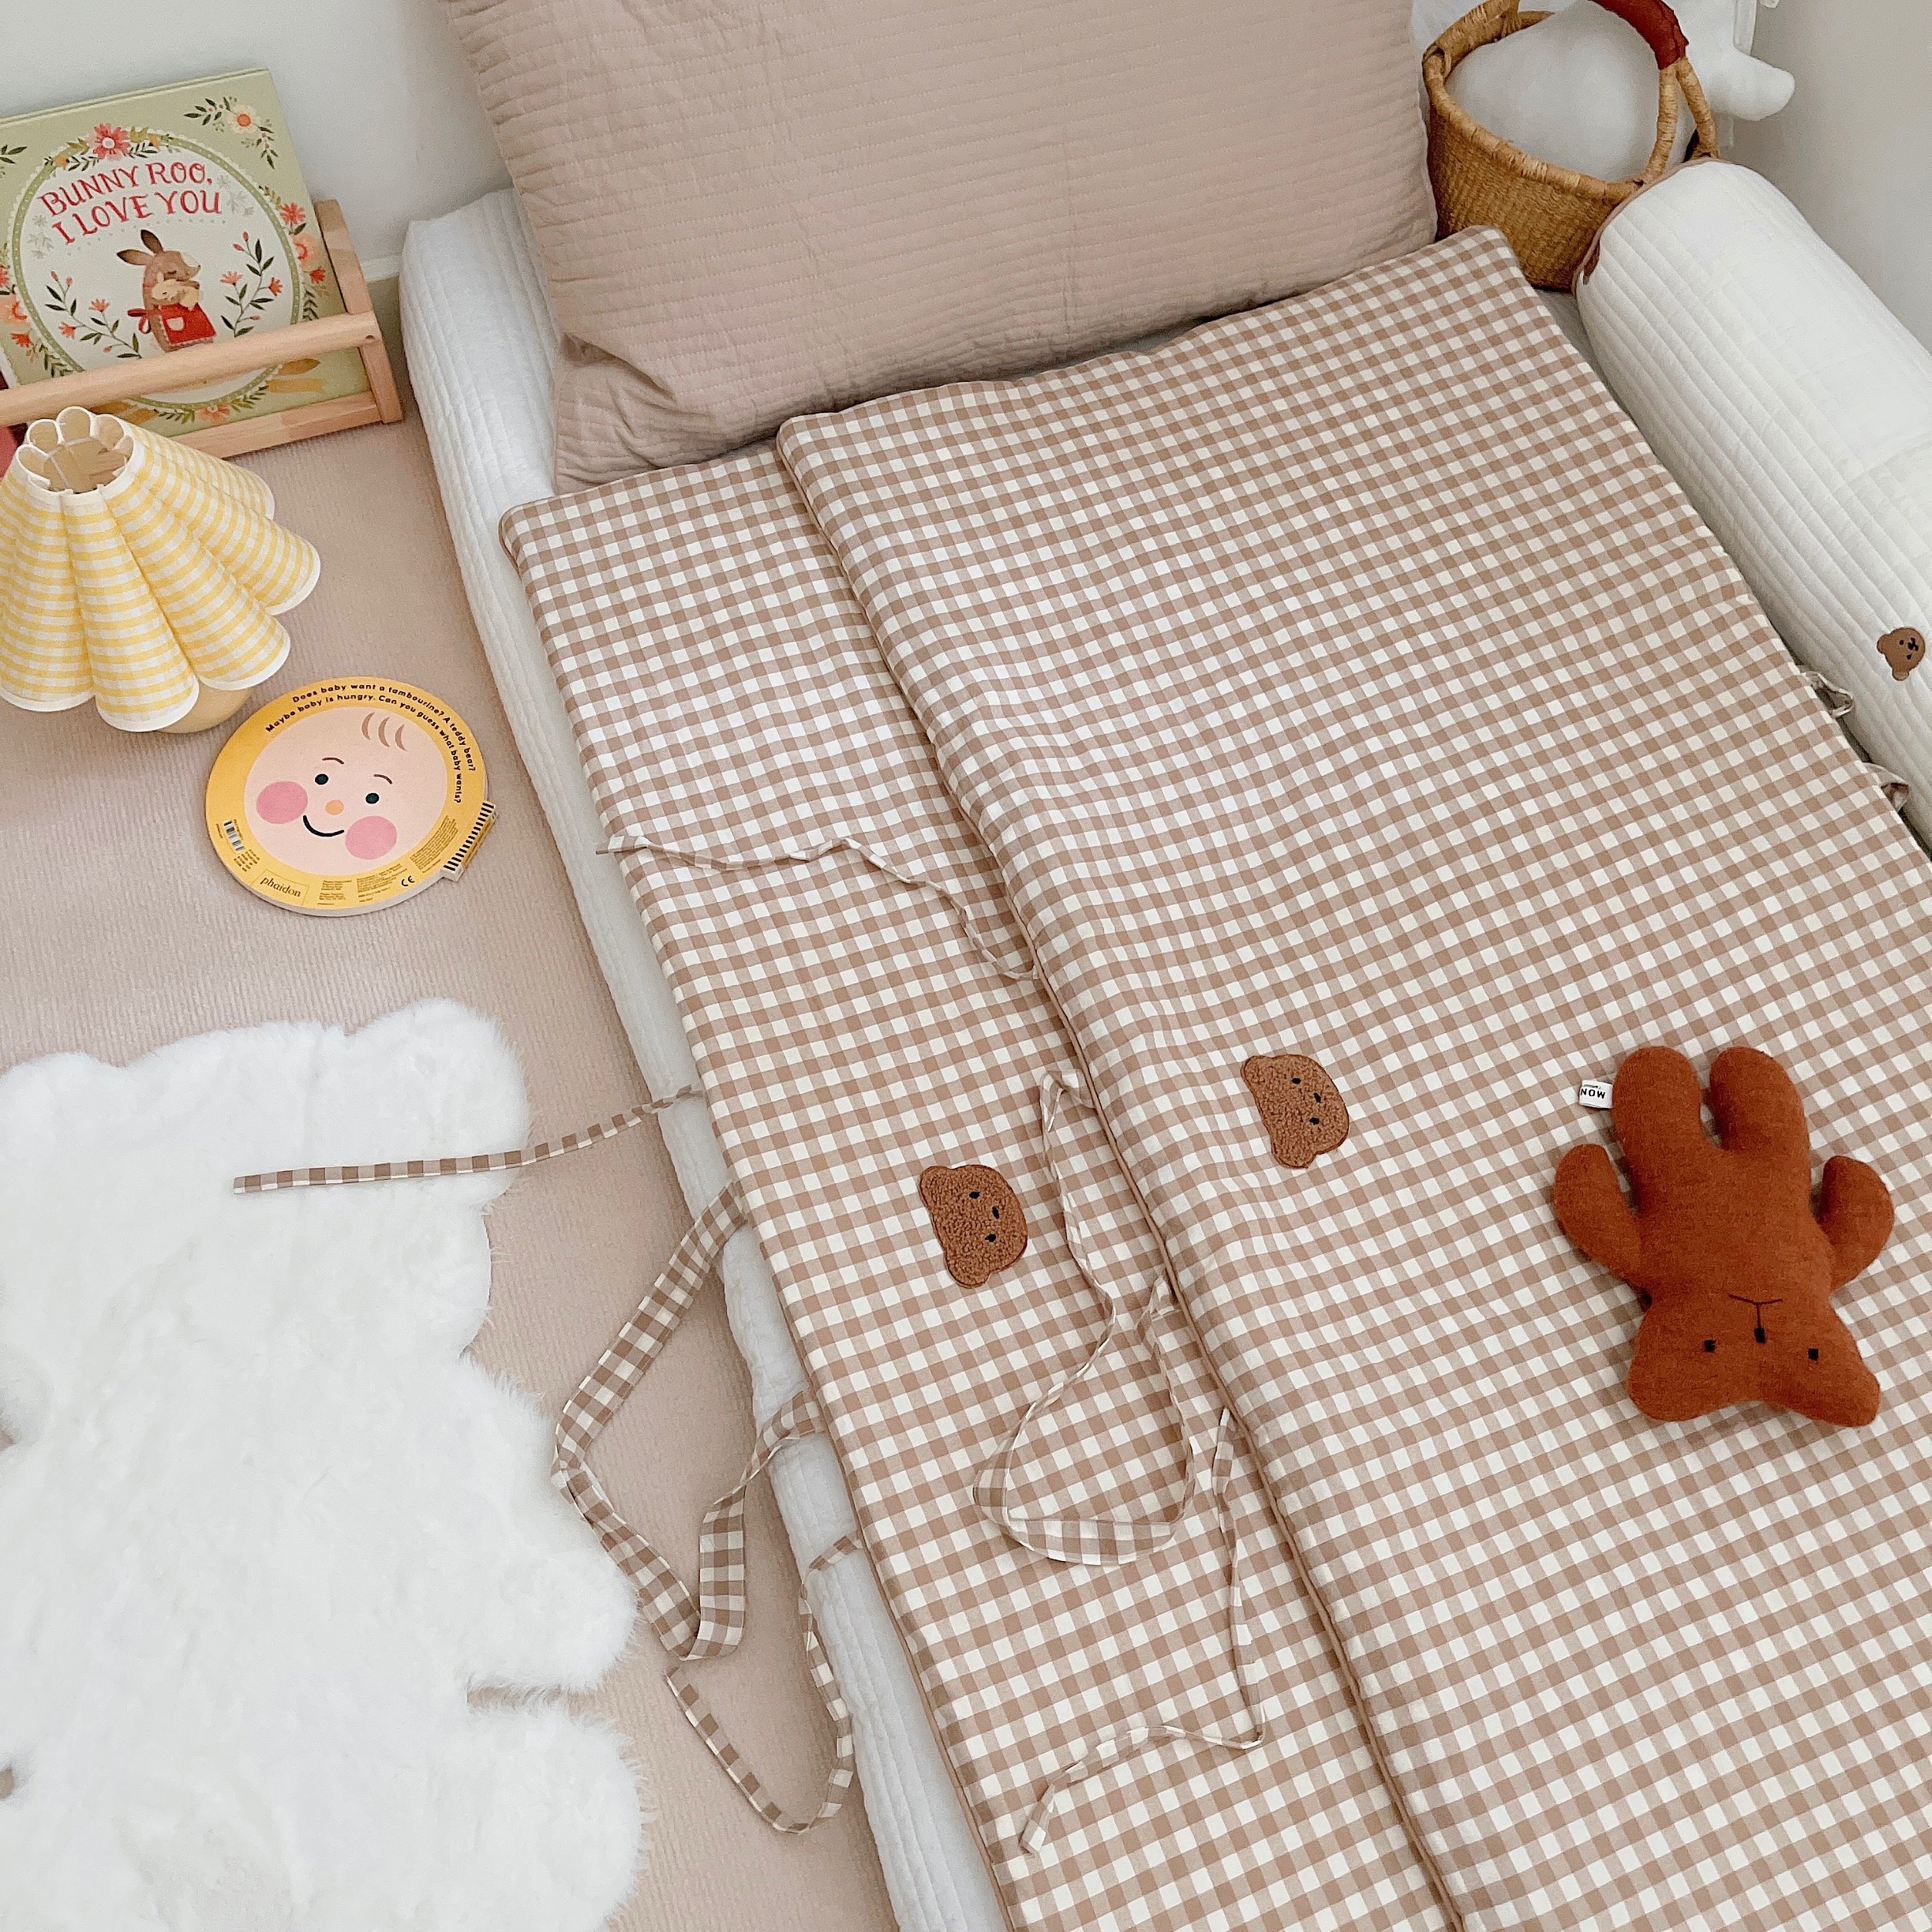 手提床垫|韩式ins幼儿园纯棉格子床垫抗菌抗瞒午睡便携带式可机洗